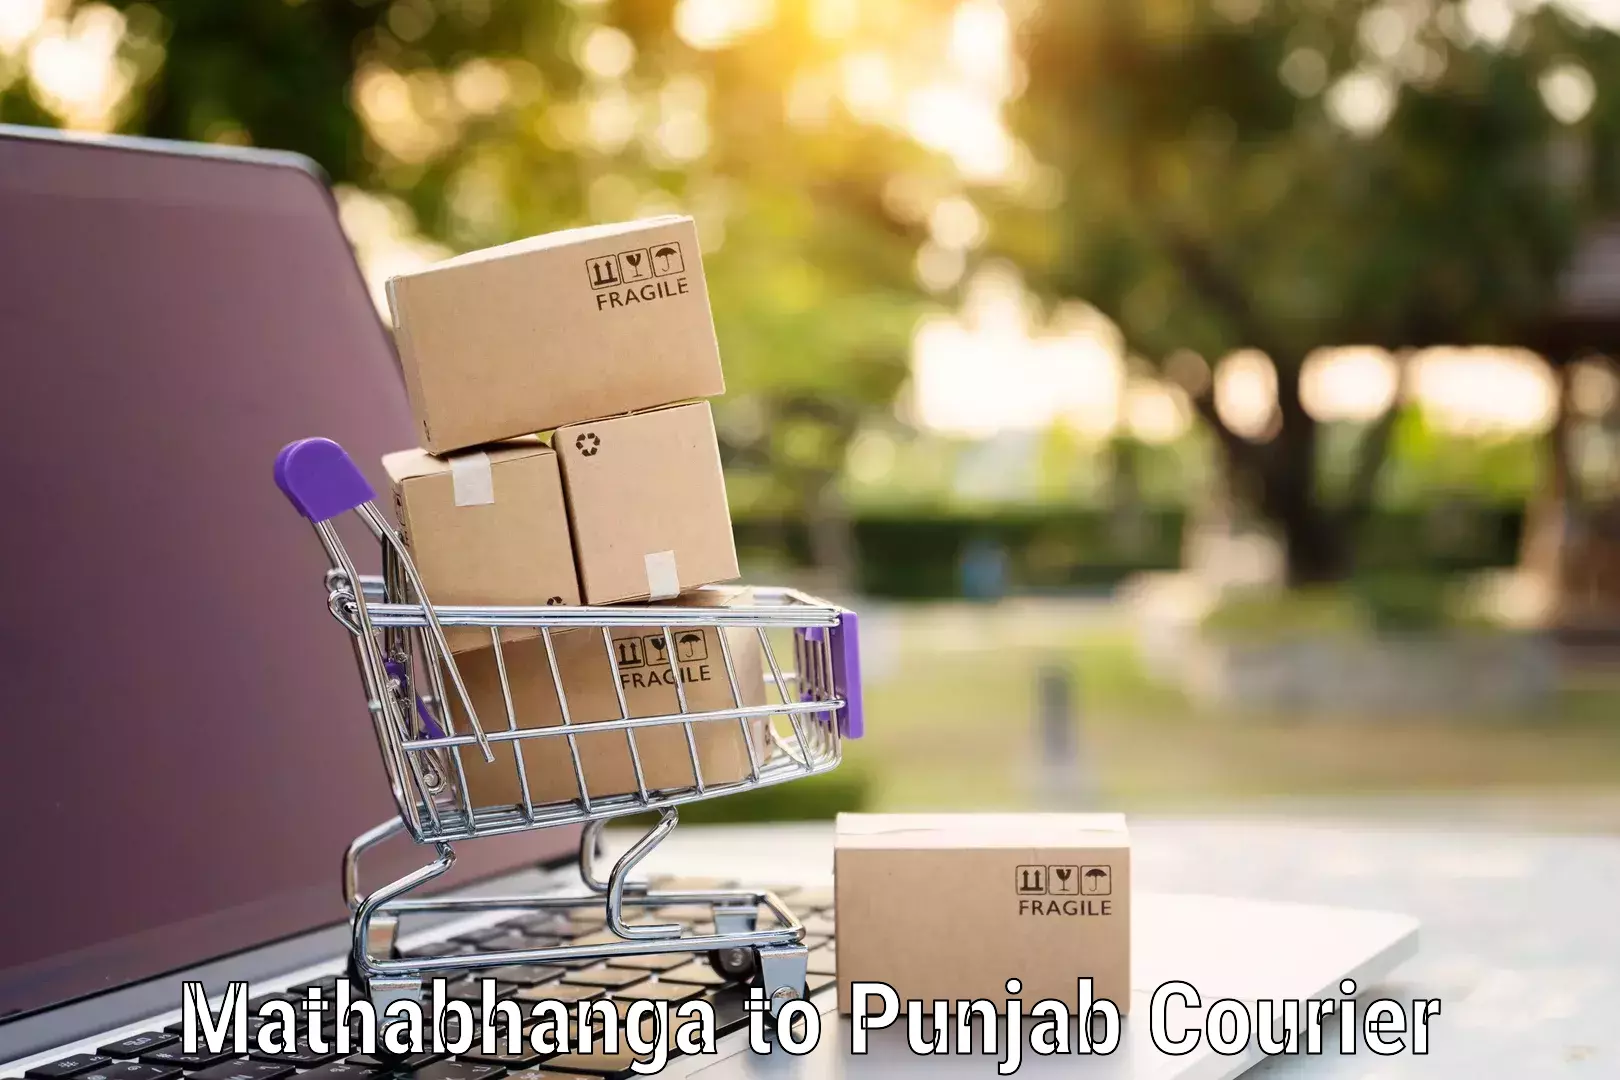 Efficient packing services Mathabhanga to Punjab